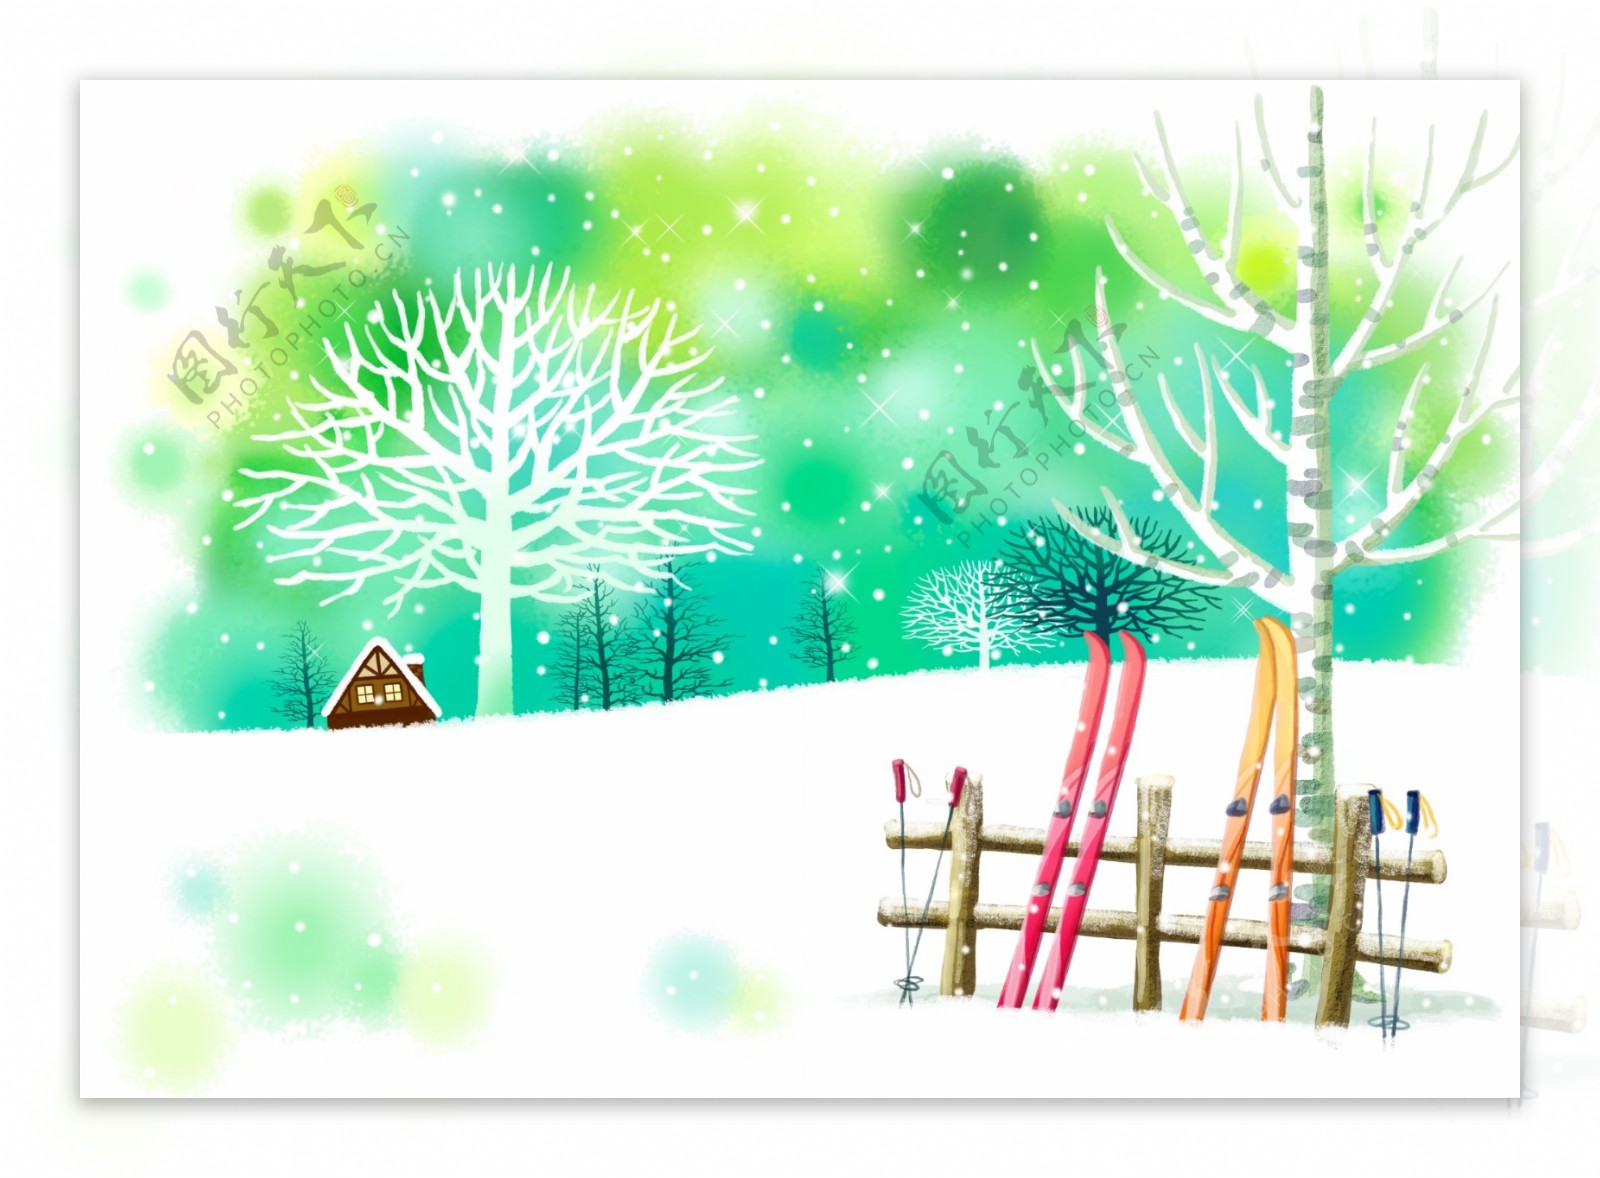 唯美雪地小屋雪橇绘图插画图片